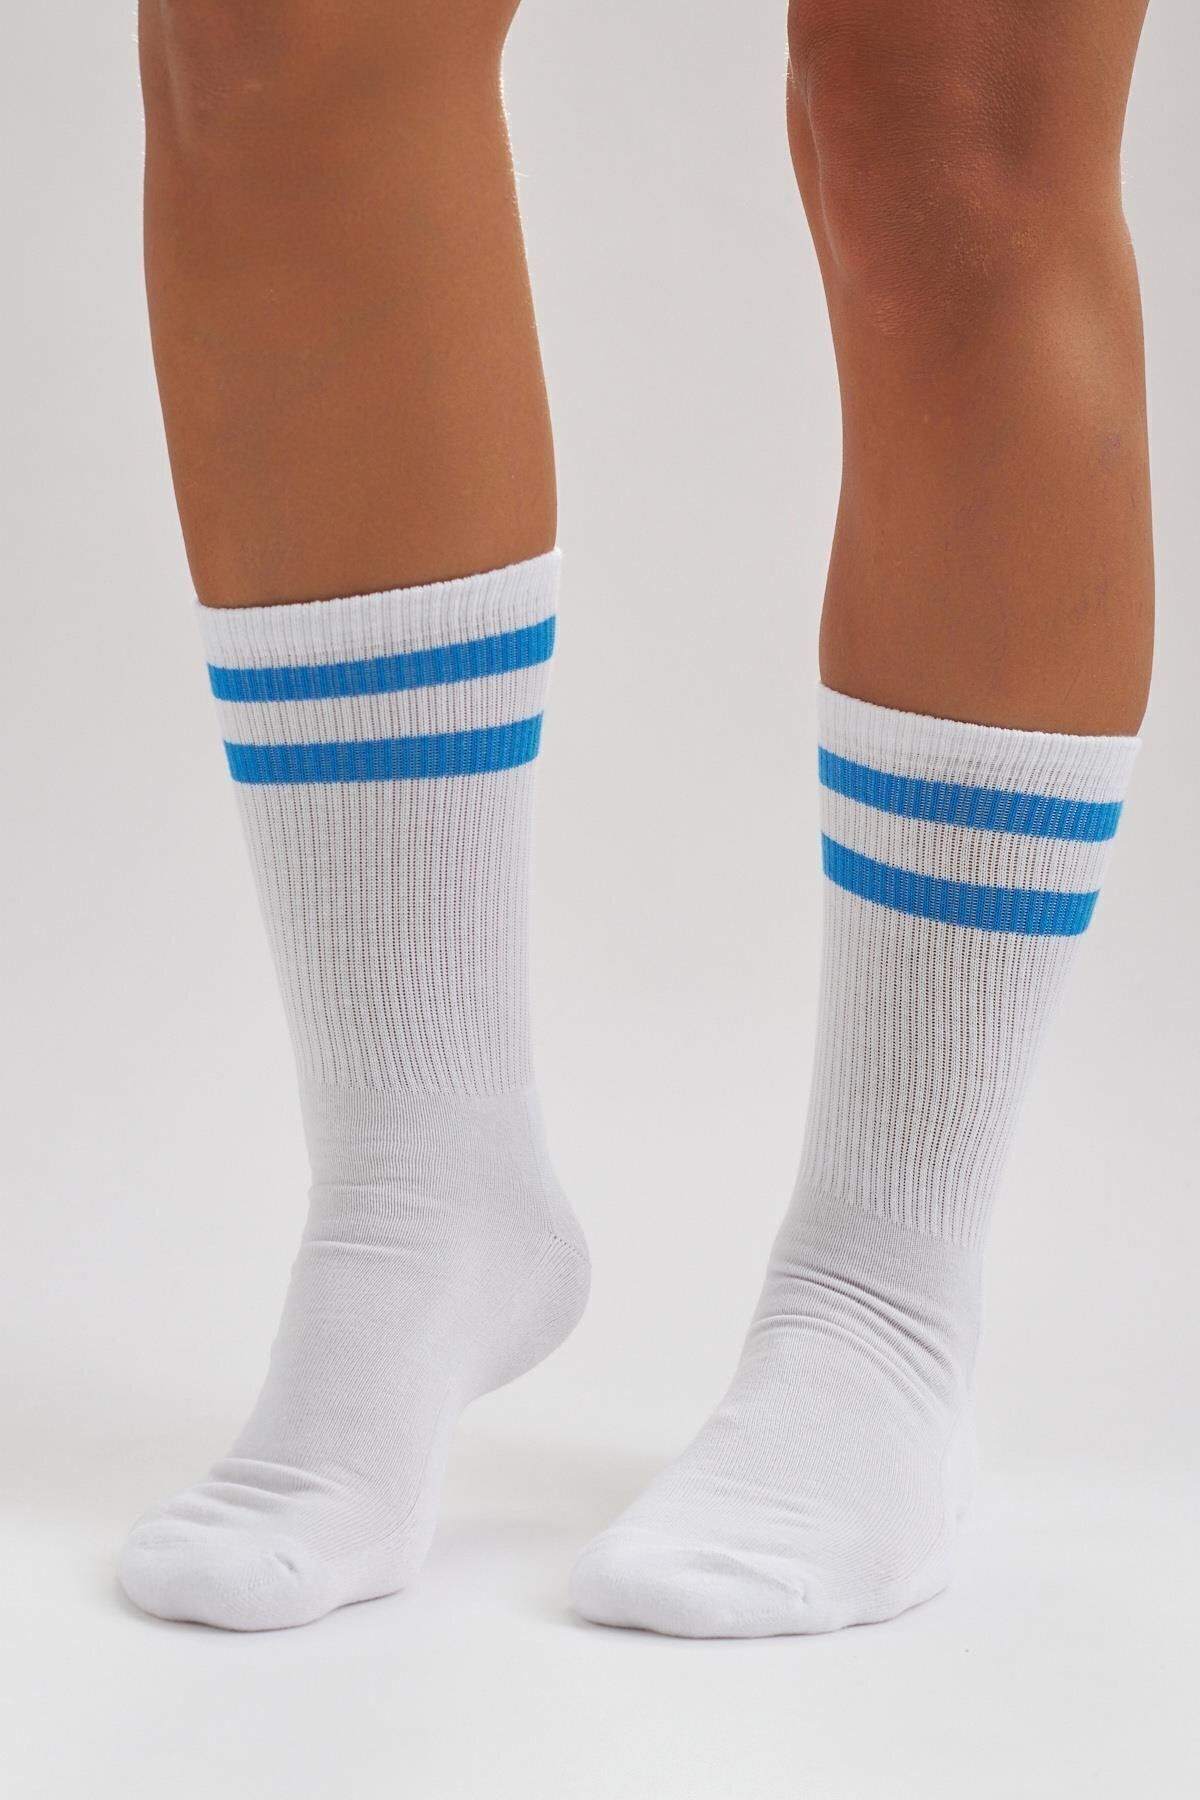 Katia & Bony Erkek Havlu Taban Çizgili Soket Çorap Beyaz/mavi